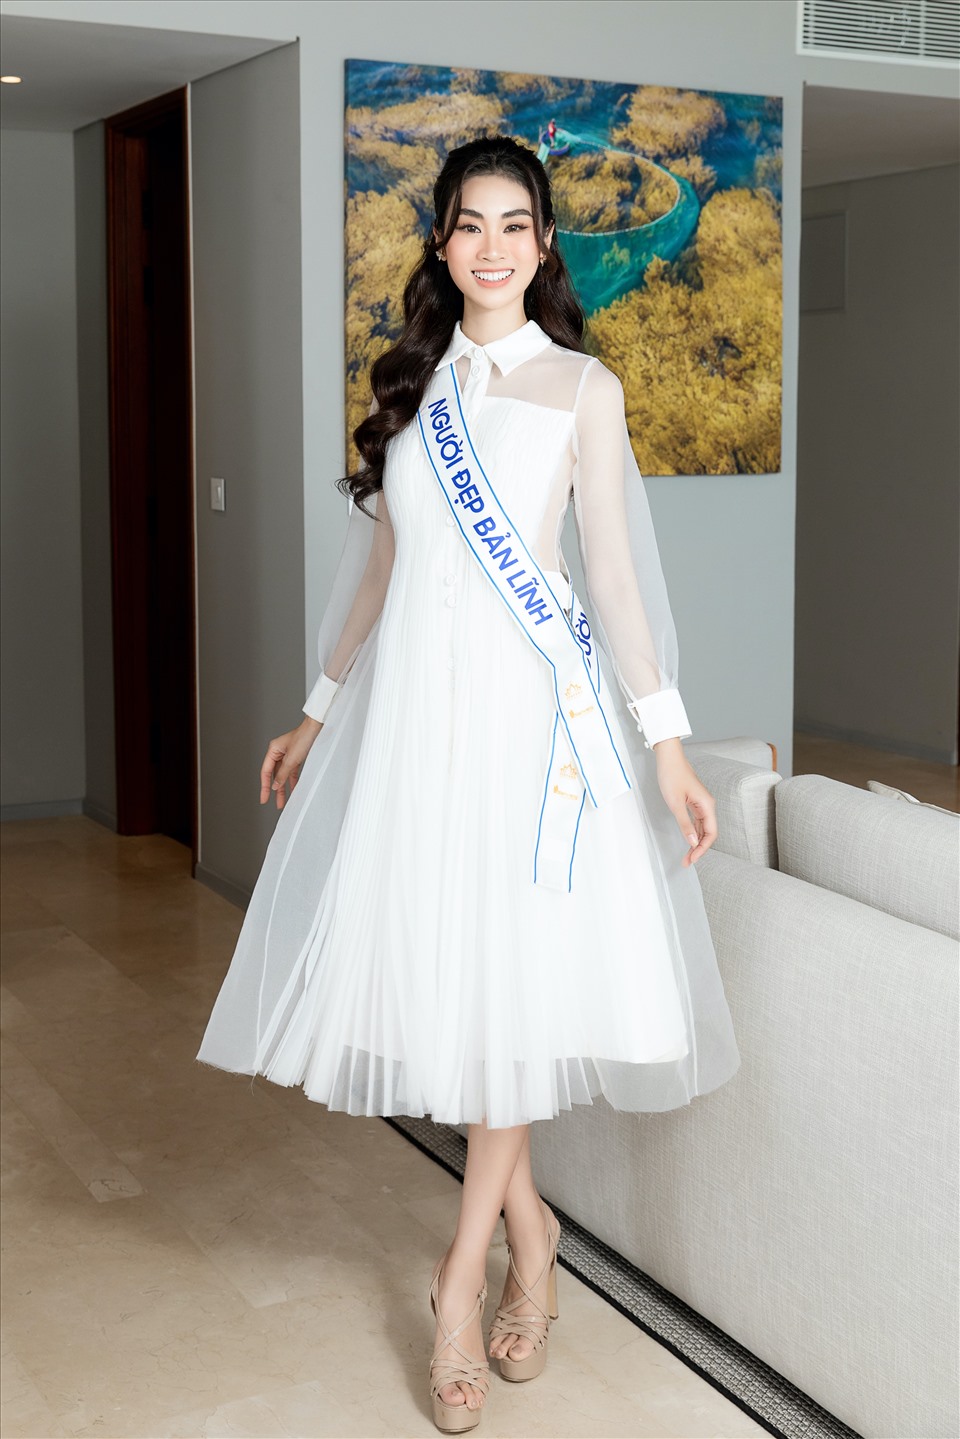 Head to Head Challenge là phần thi đặc biệt bám sát format của cuộc thi Miss World. Thí sinh Nguyễn Thùy Linh đã xuất sắc vượt qua 36 cô gái của Miss World Việt Nam 2022 để trở thành người chiến thắng. Ảnh: MWVN.